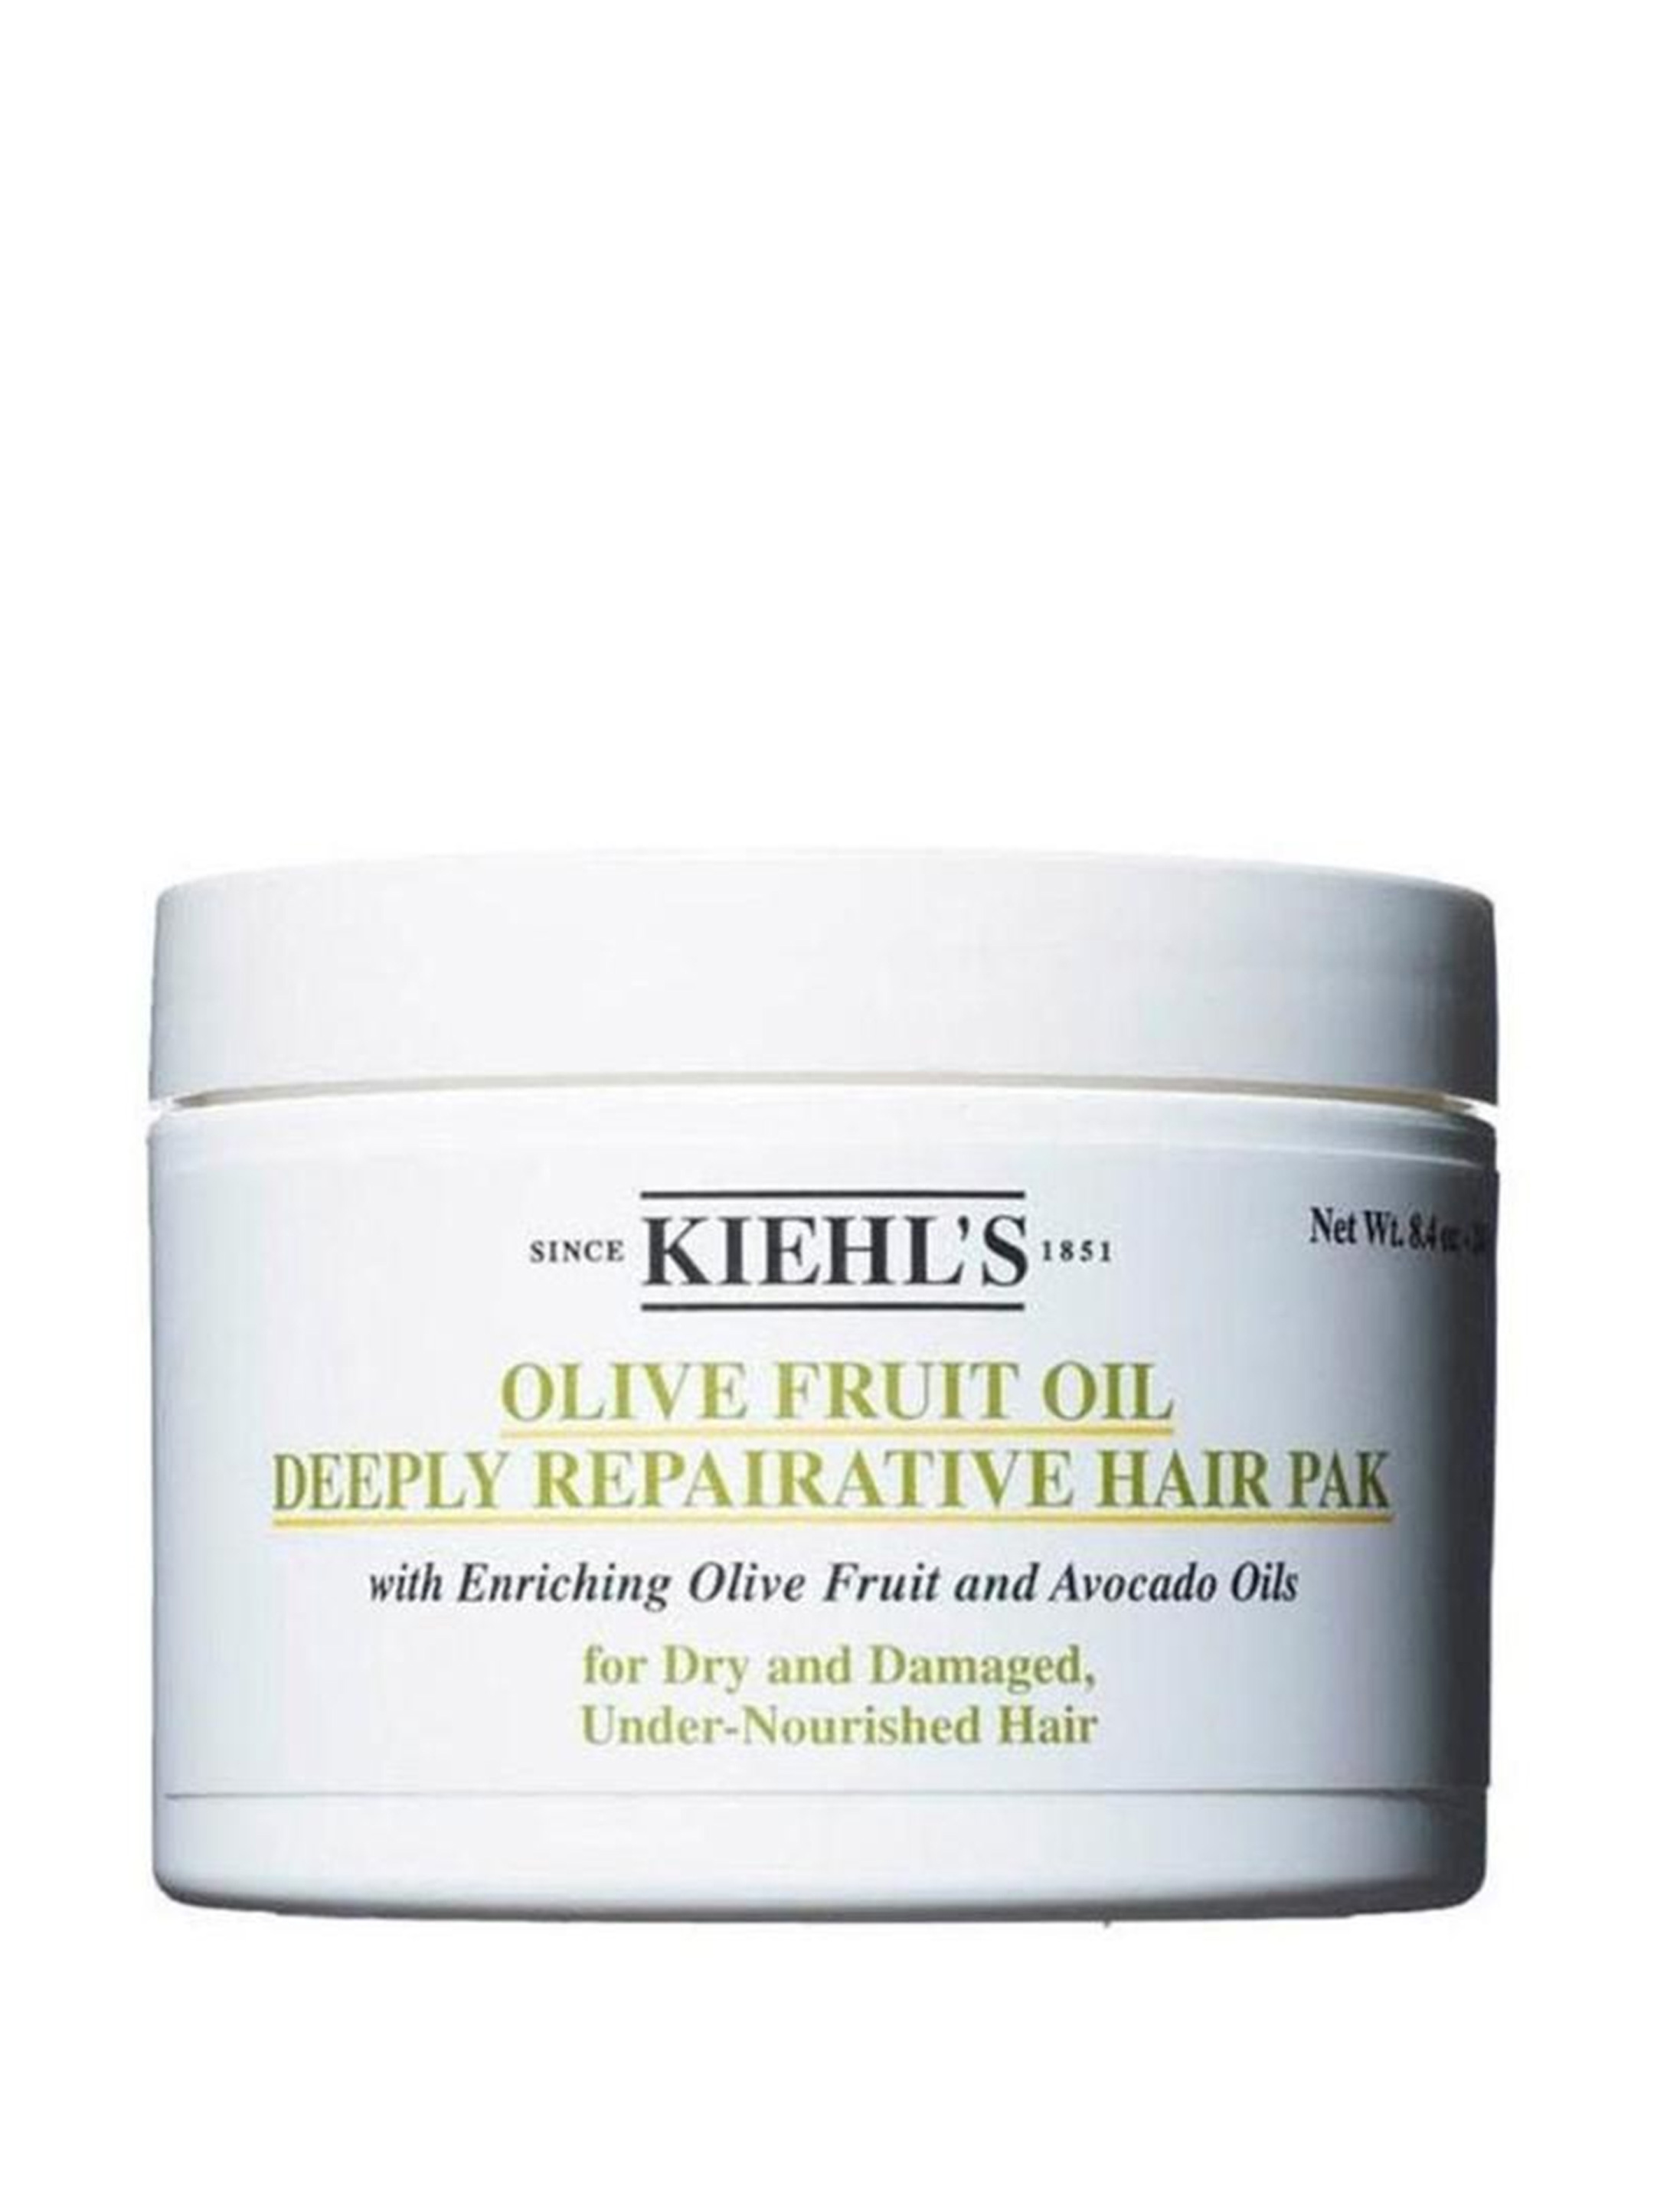 Питательная восстанавливающая маска. Kiehls маска для волос олива. Olive Fruit Oil deeply Repairative hair Pak, Kiehl’s. Маска для волос питательная. Питающая маска для волос.